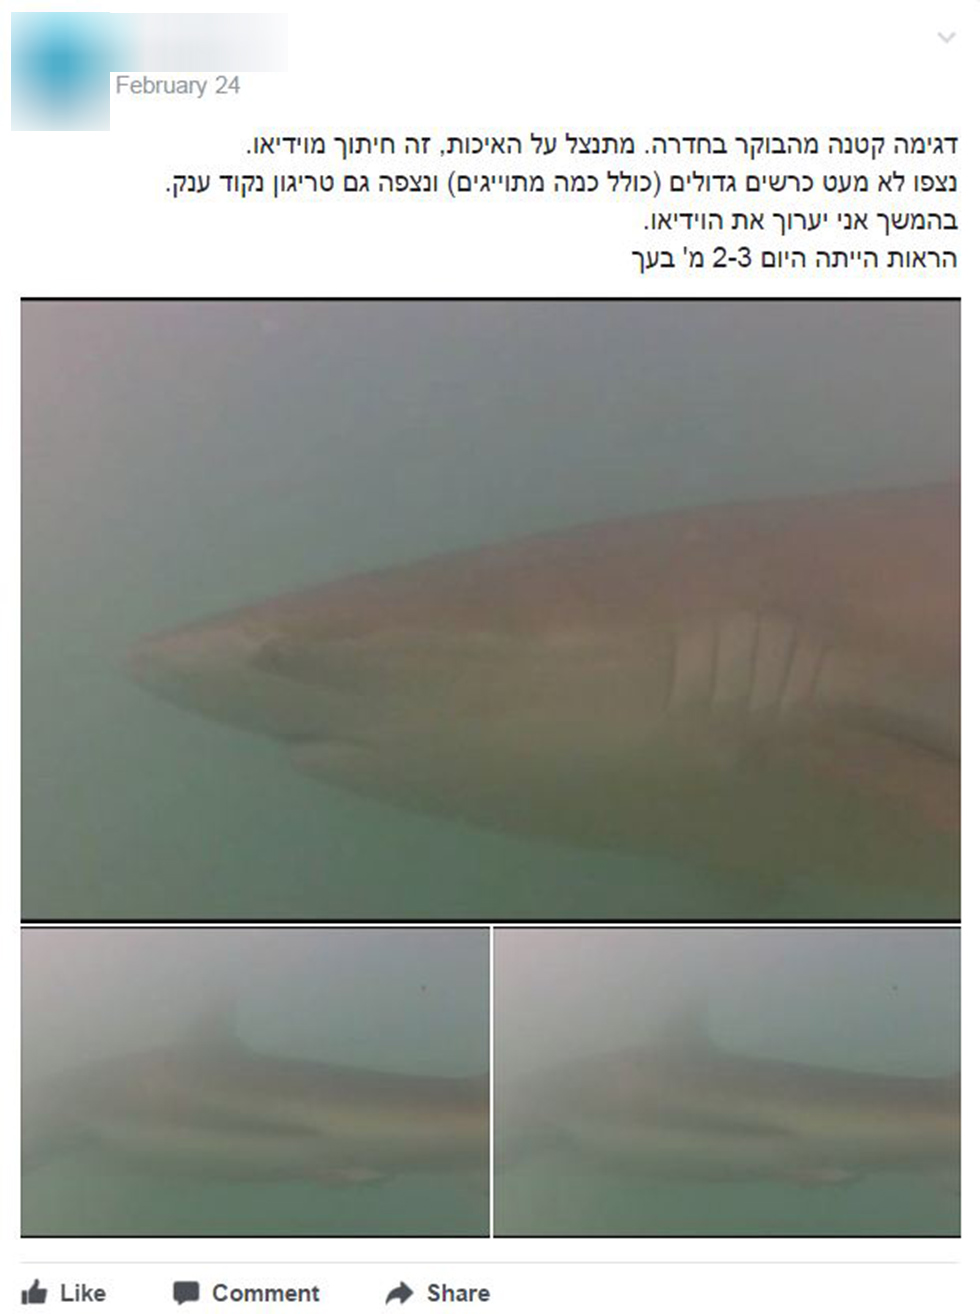  (צילום מסך מתוך קבוצת הפייסבוק  "כרישים בישראל") (צילום מסך מתוך קבוצת הפייסבוק  